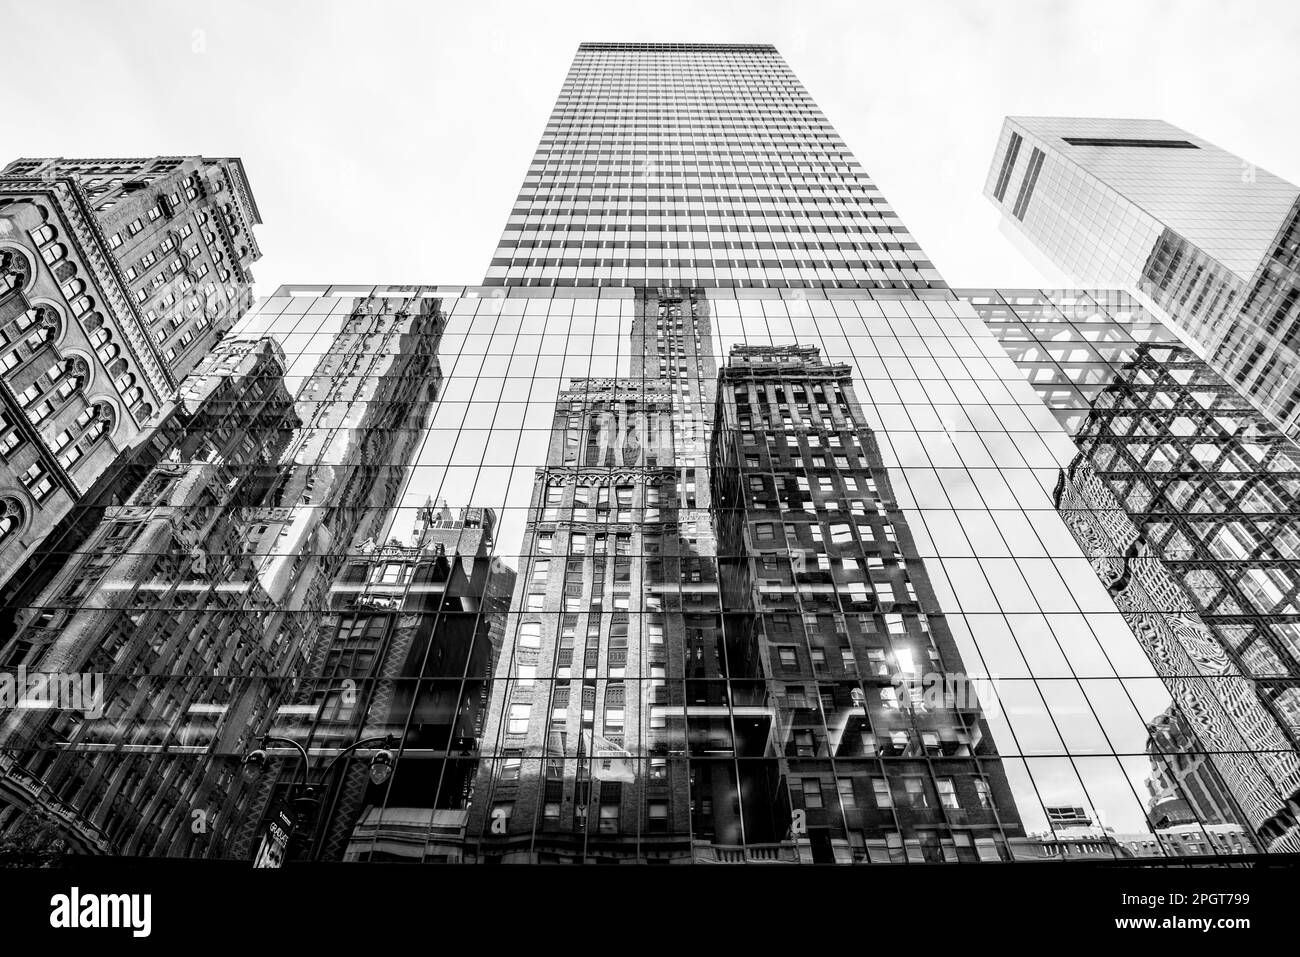 Vue sur la rue de Manhattan avec de grands bâtiments, New York, États-Unis. Noir et blanc Banque D'Images